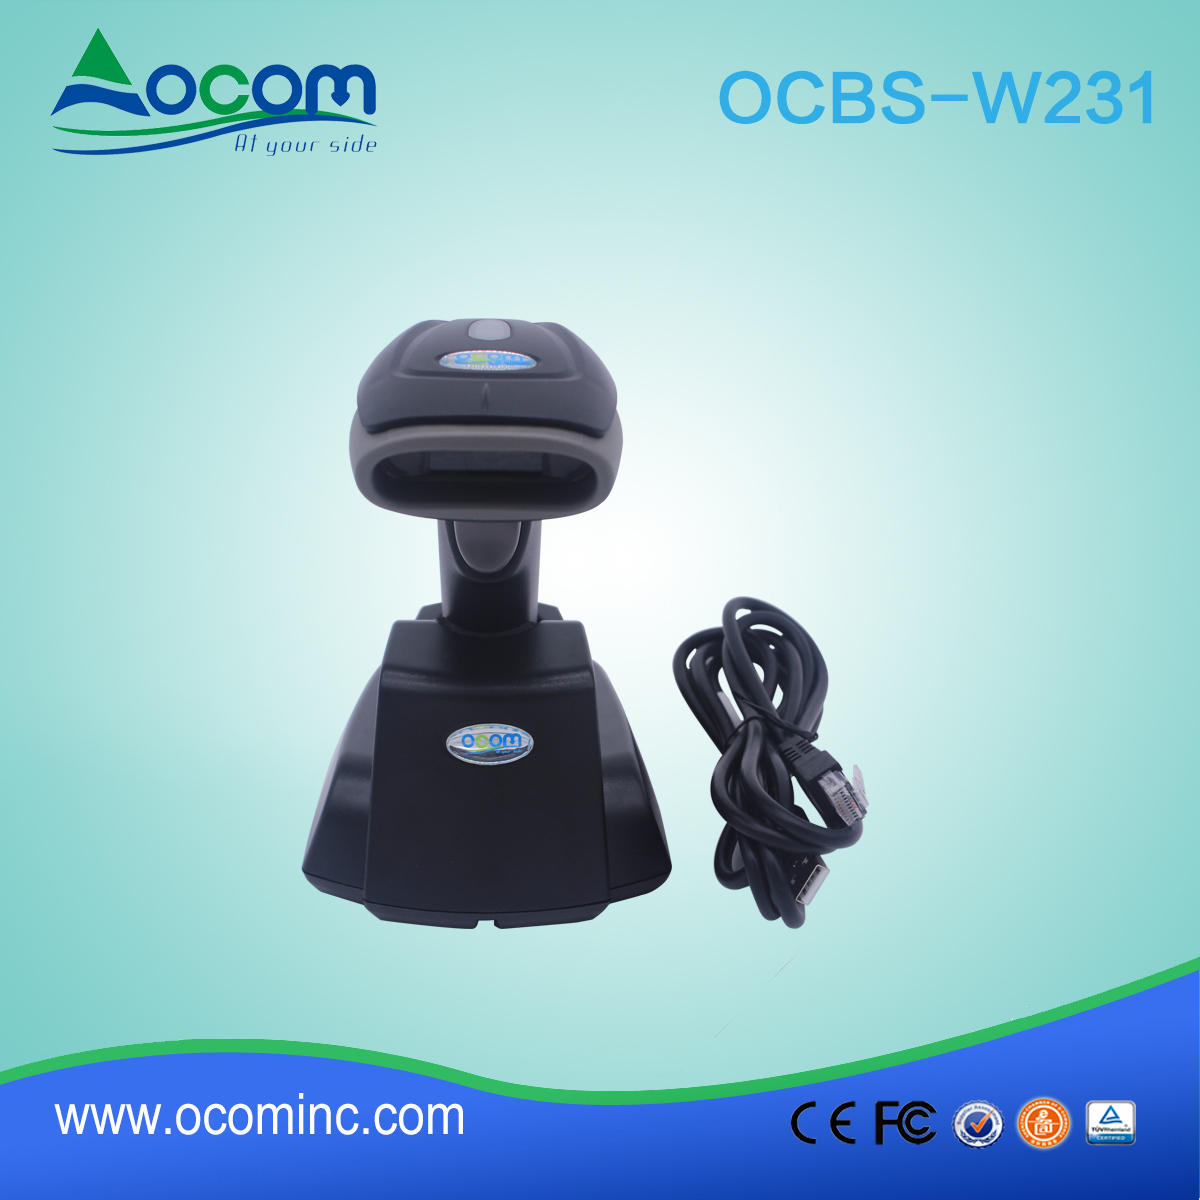 (OCBS-W231) Handheld 433Mhz Wireless QR Code 2D Barcode Scanner With Cradle